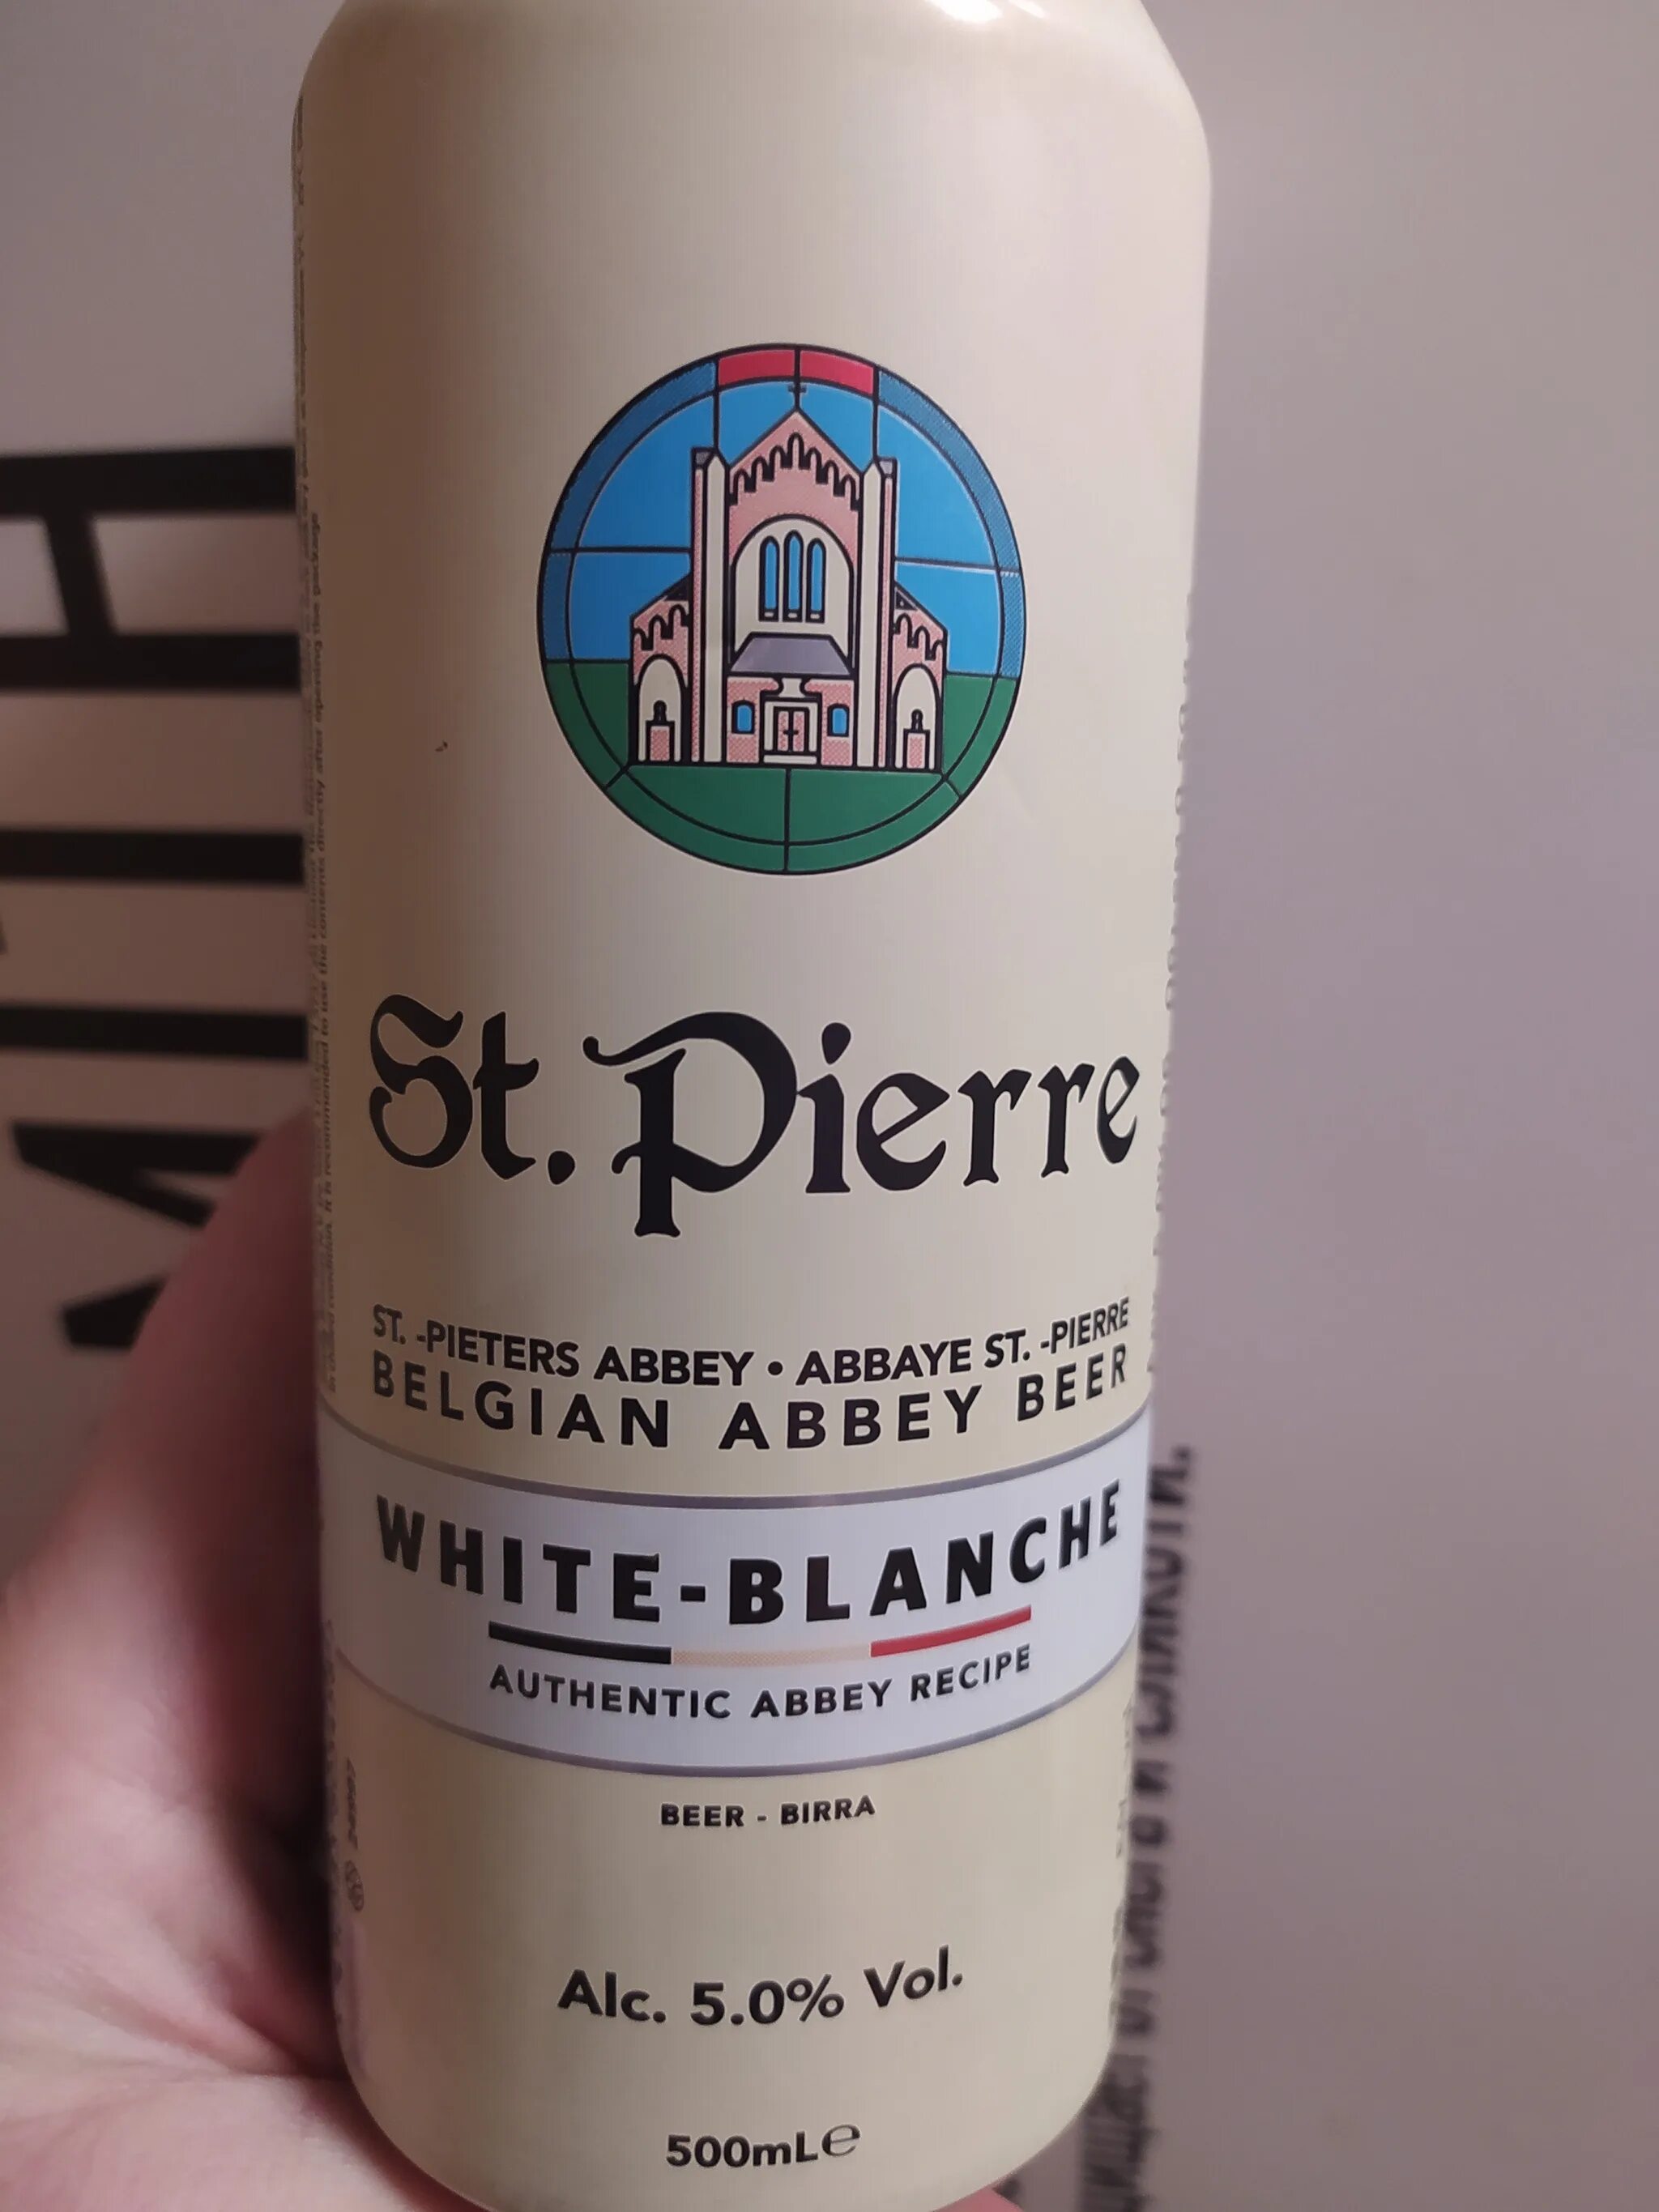 St pierre пиво. Пиво St Piere Pierre. St Pierre blond. Напиток St Pierre Blanche.